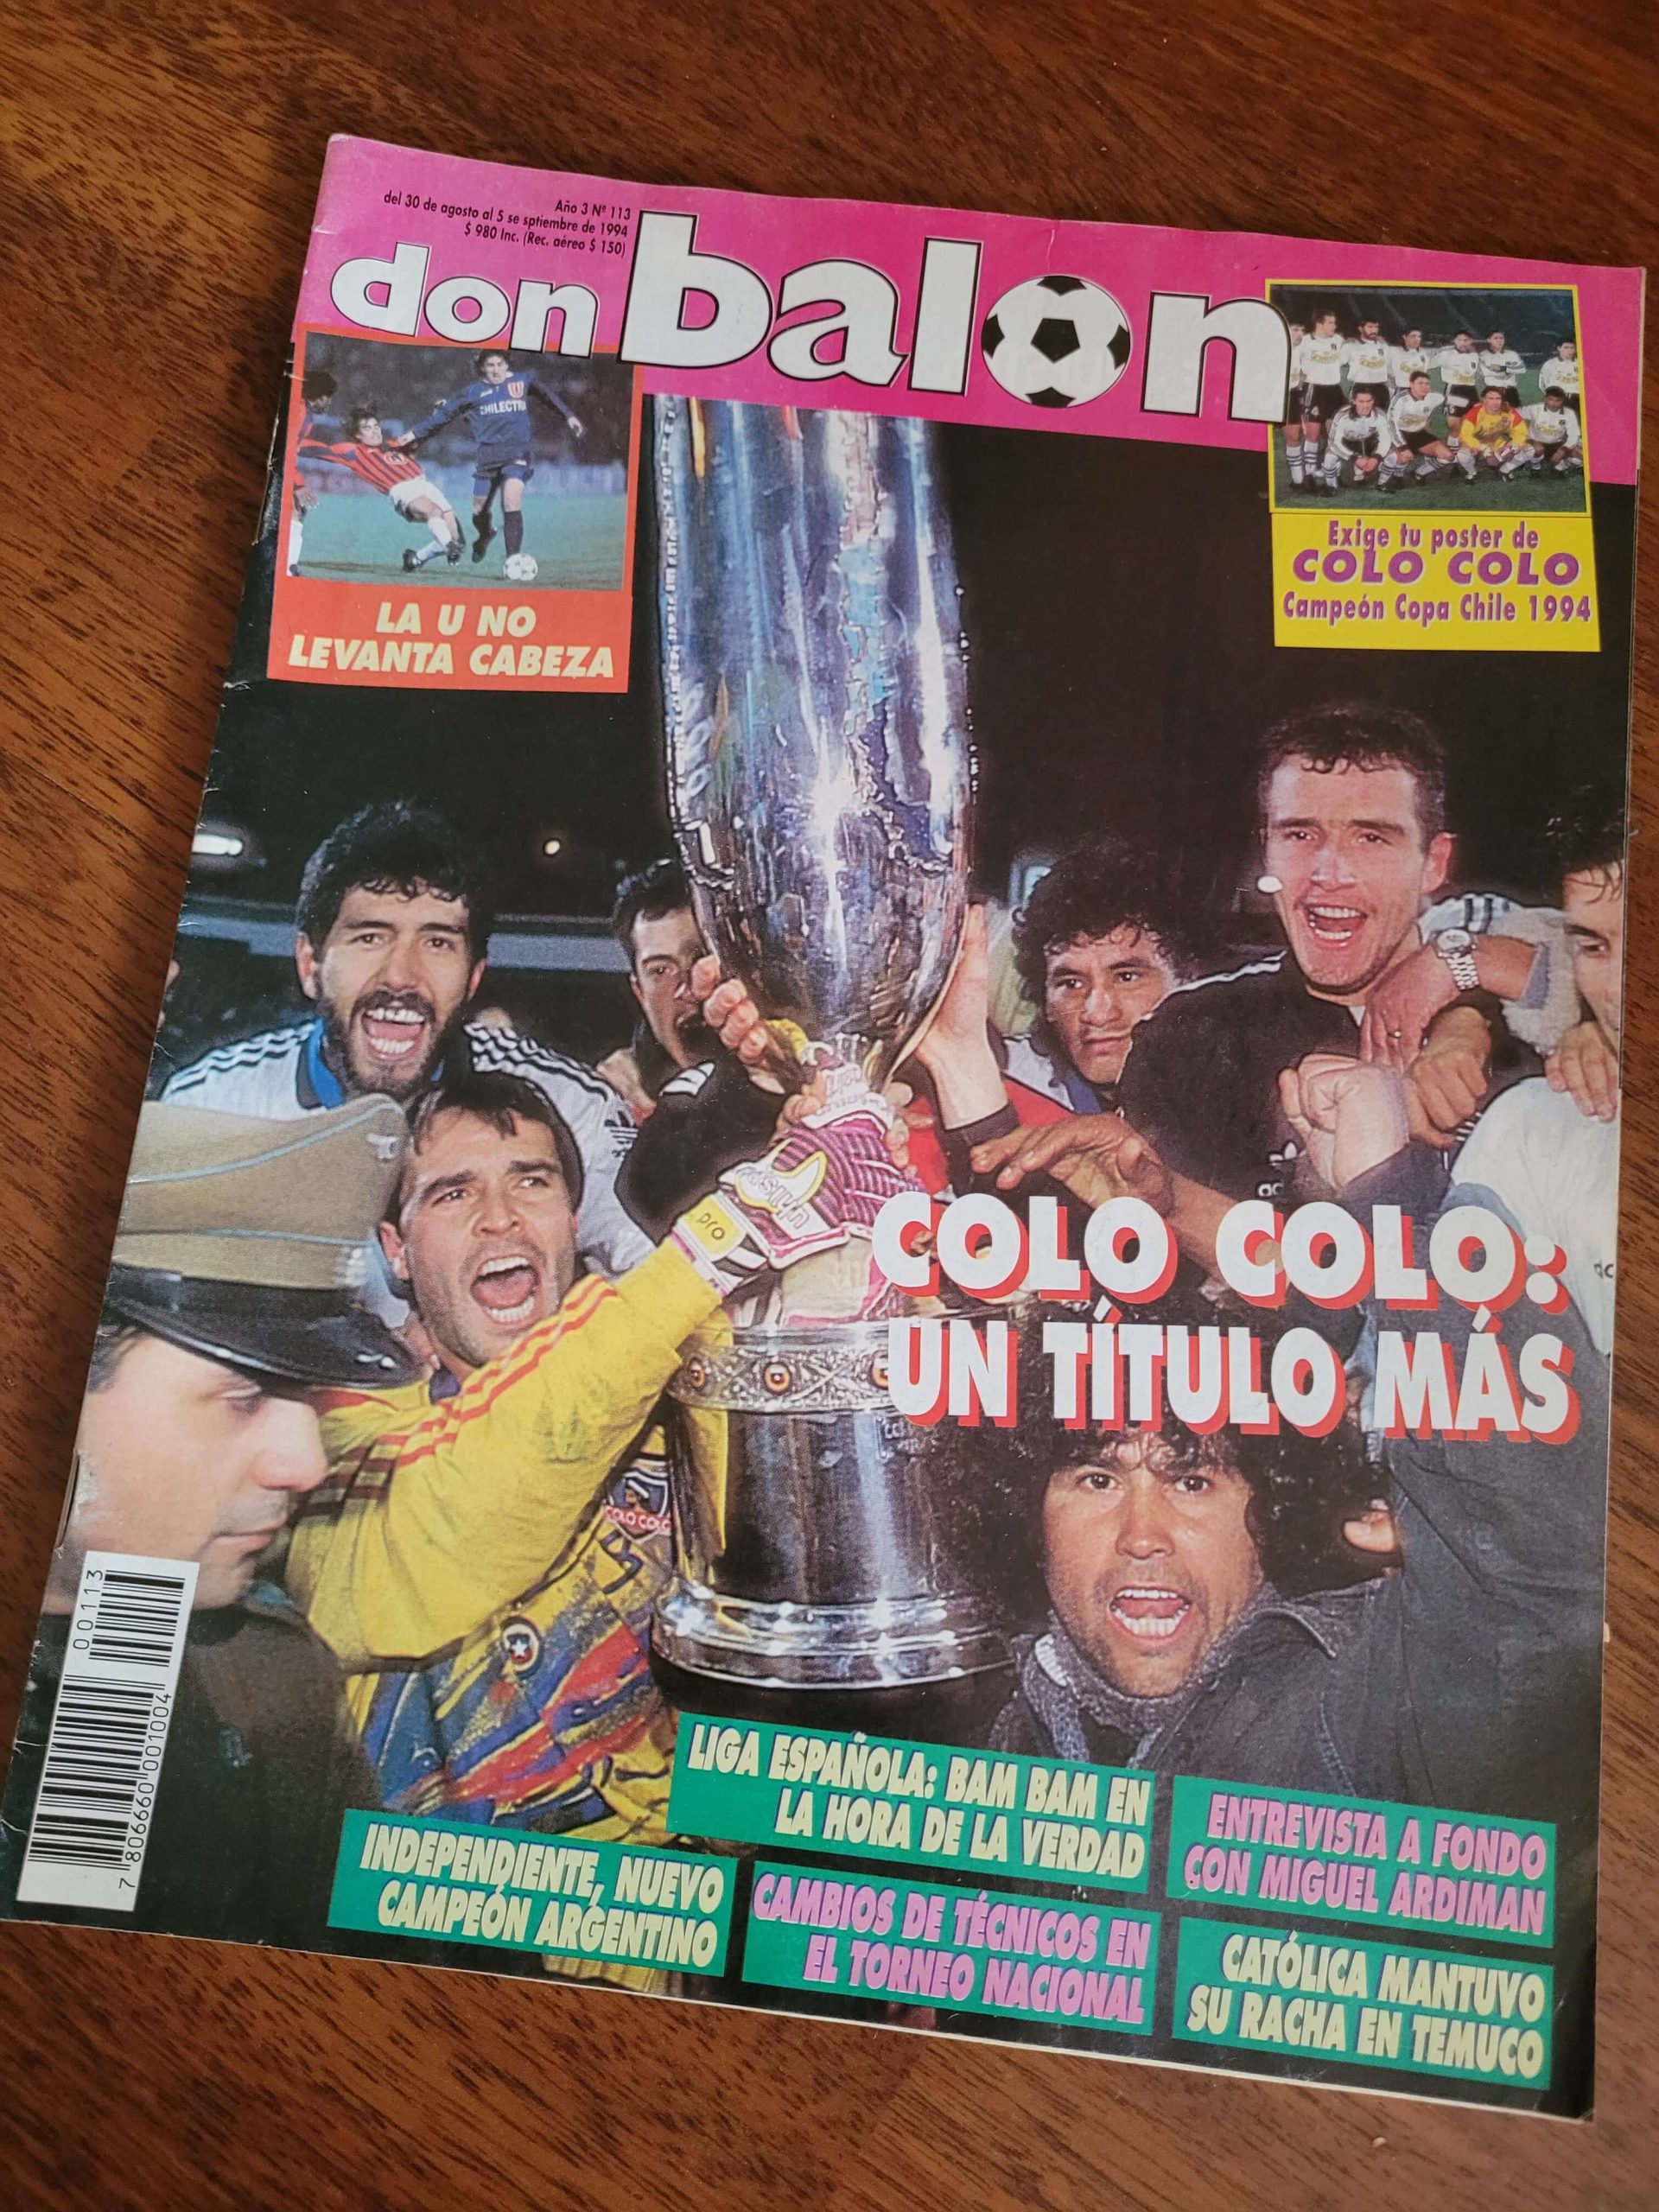 (1994) Don Balón Colo Colo campeón Copa Chile 94